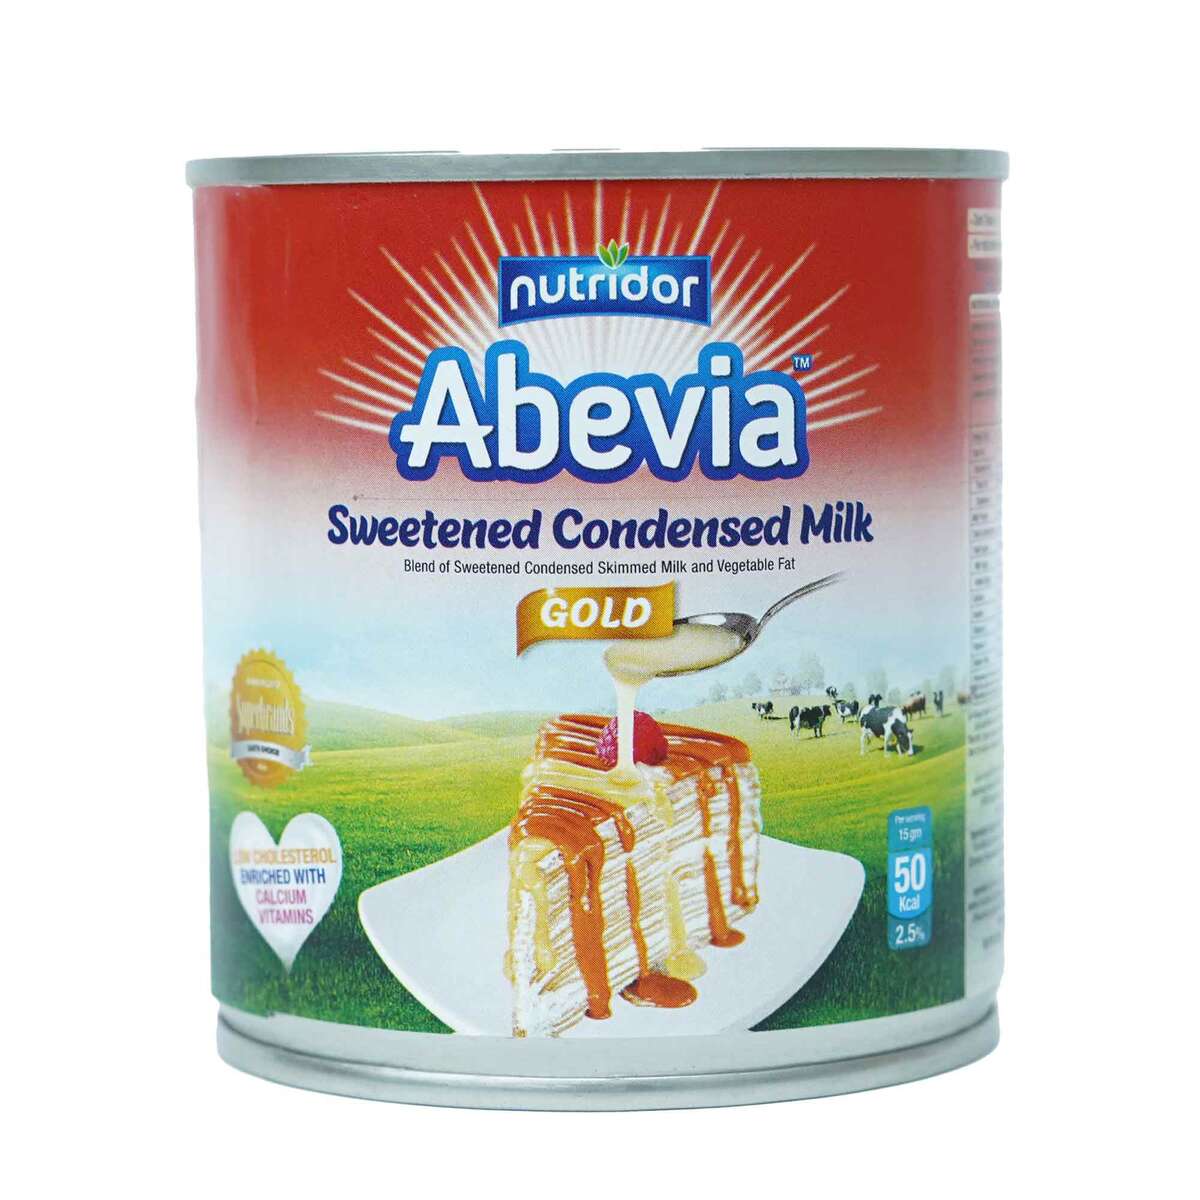 اشتري قم بشراء نوتريدور أبيفيا جولد حليب مكثف محلى 390 جم Online at Best Price من الموقع - من لولو هايبر ماركت Condnsd Sweetnd Milk في السعودية